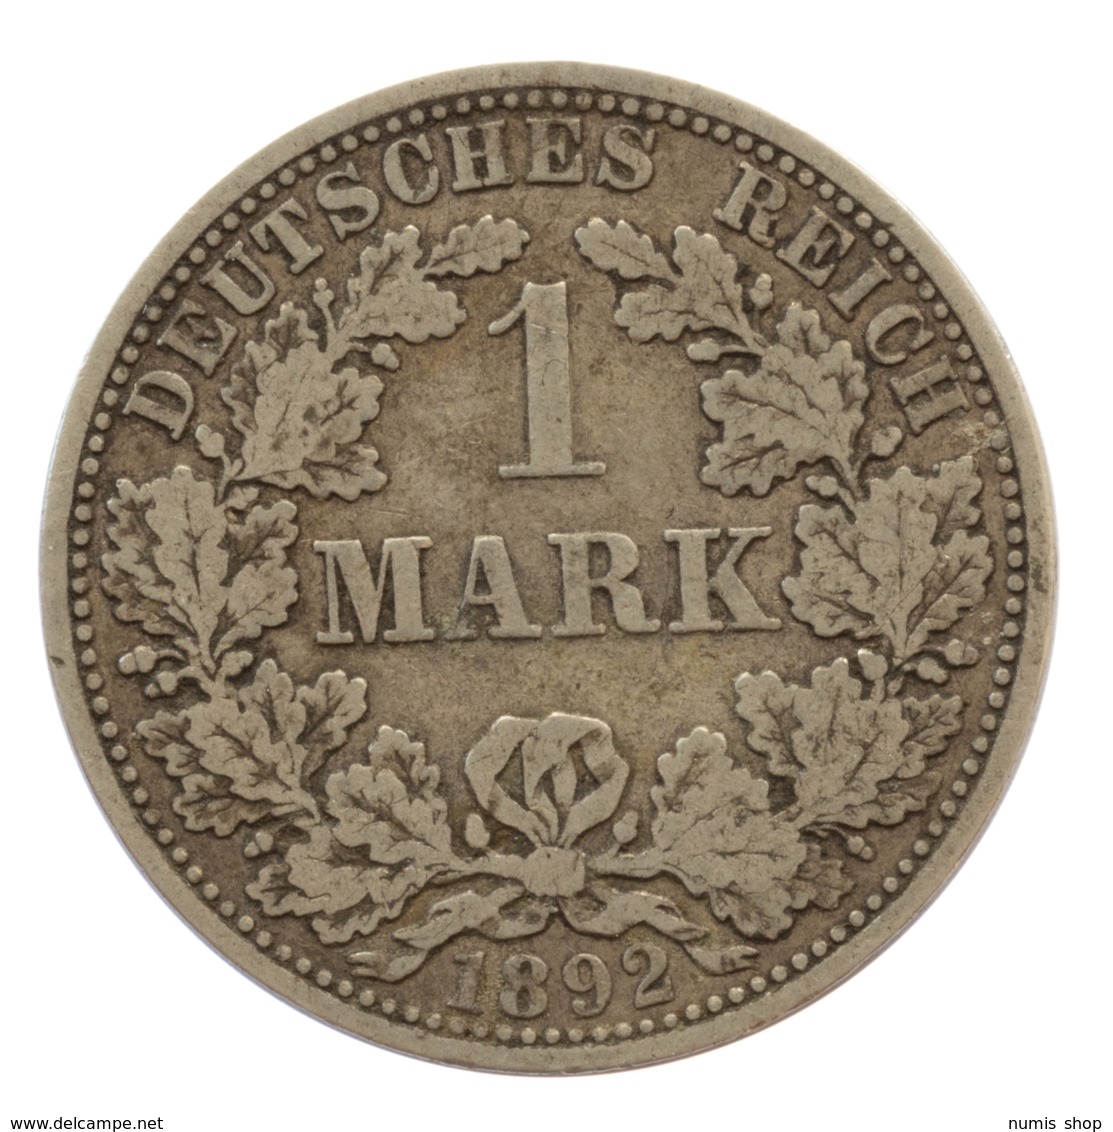 GERMANY - EMPIRE - 1 Mark - 1892 - A - Berlin - Silver - #DE040 - 1 Mark